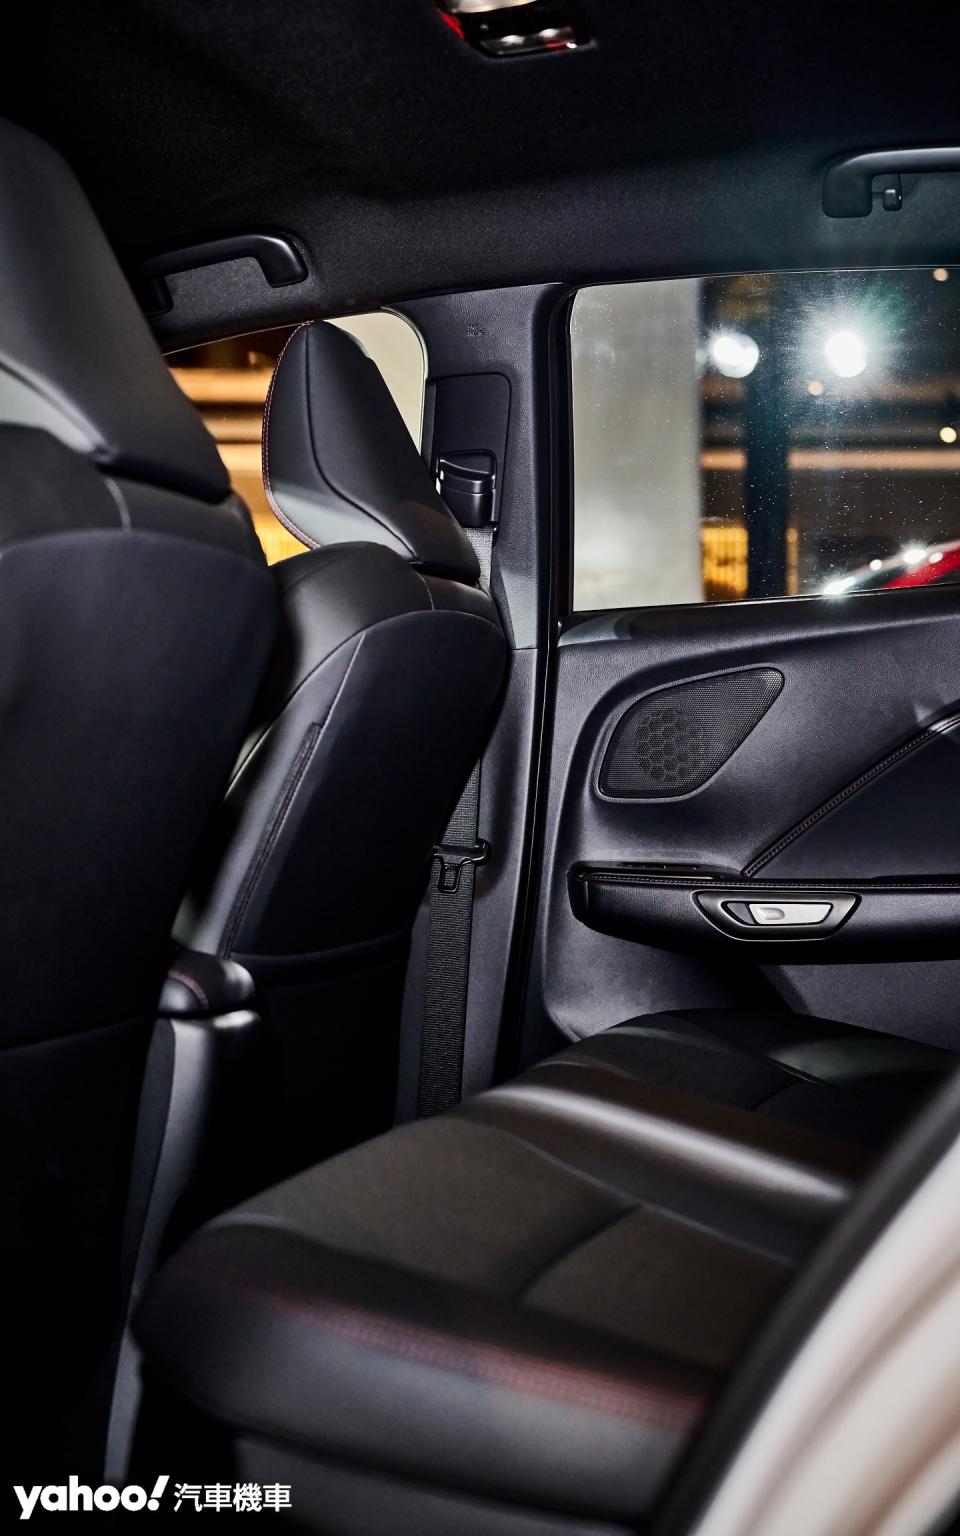 後排座椅除卻膝部空間較為侷限外，Lexus LBX在座椅角度、頭頂空間乃至於整體舒適性方面都保持水準之上。